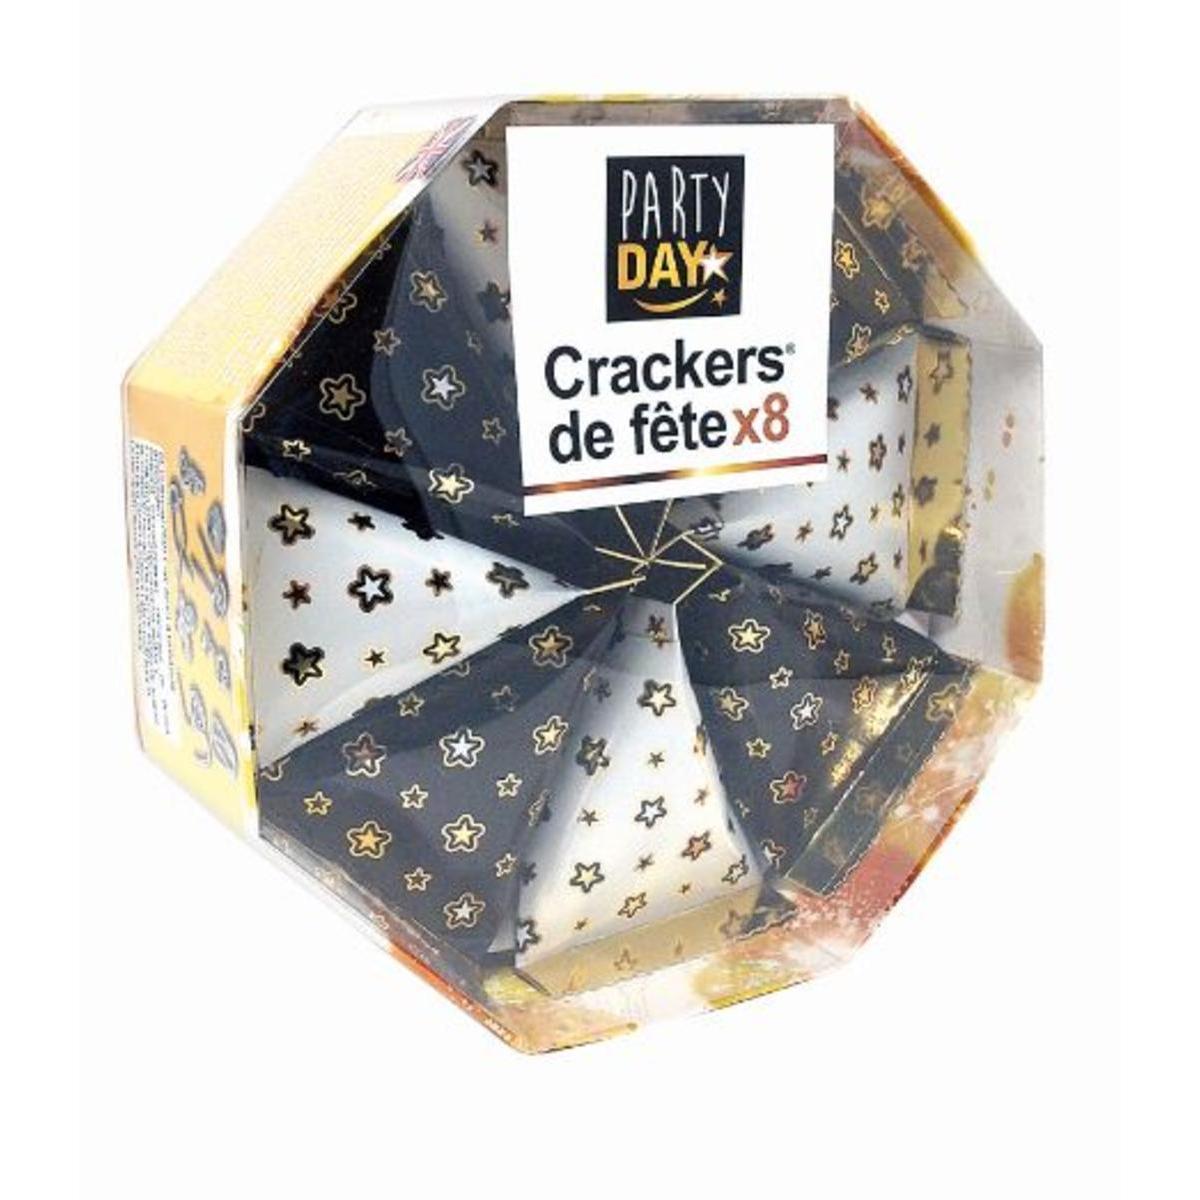 8 crackers berlingot